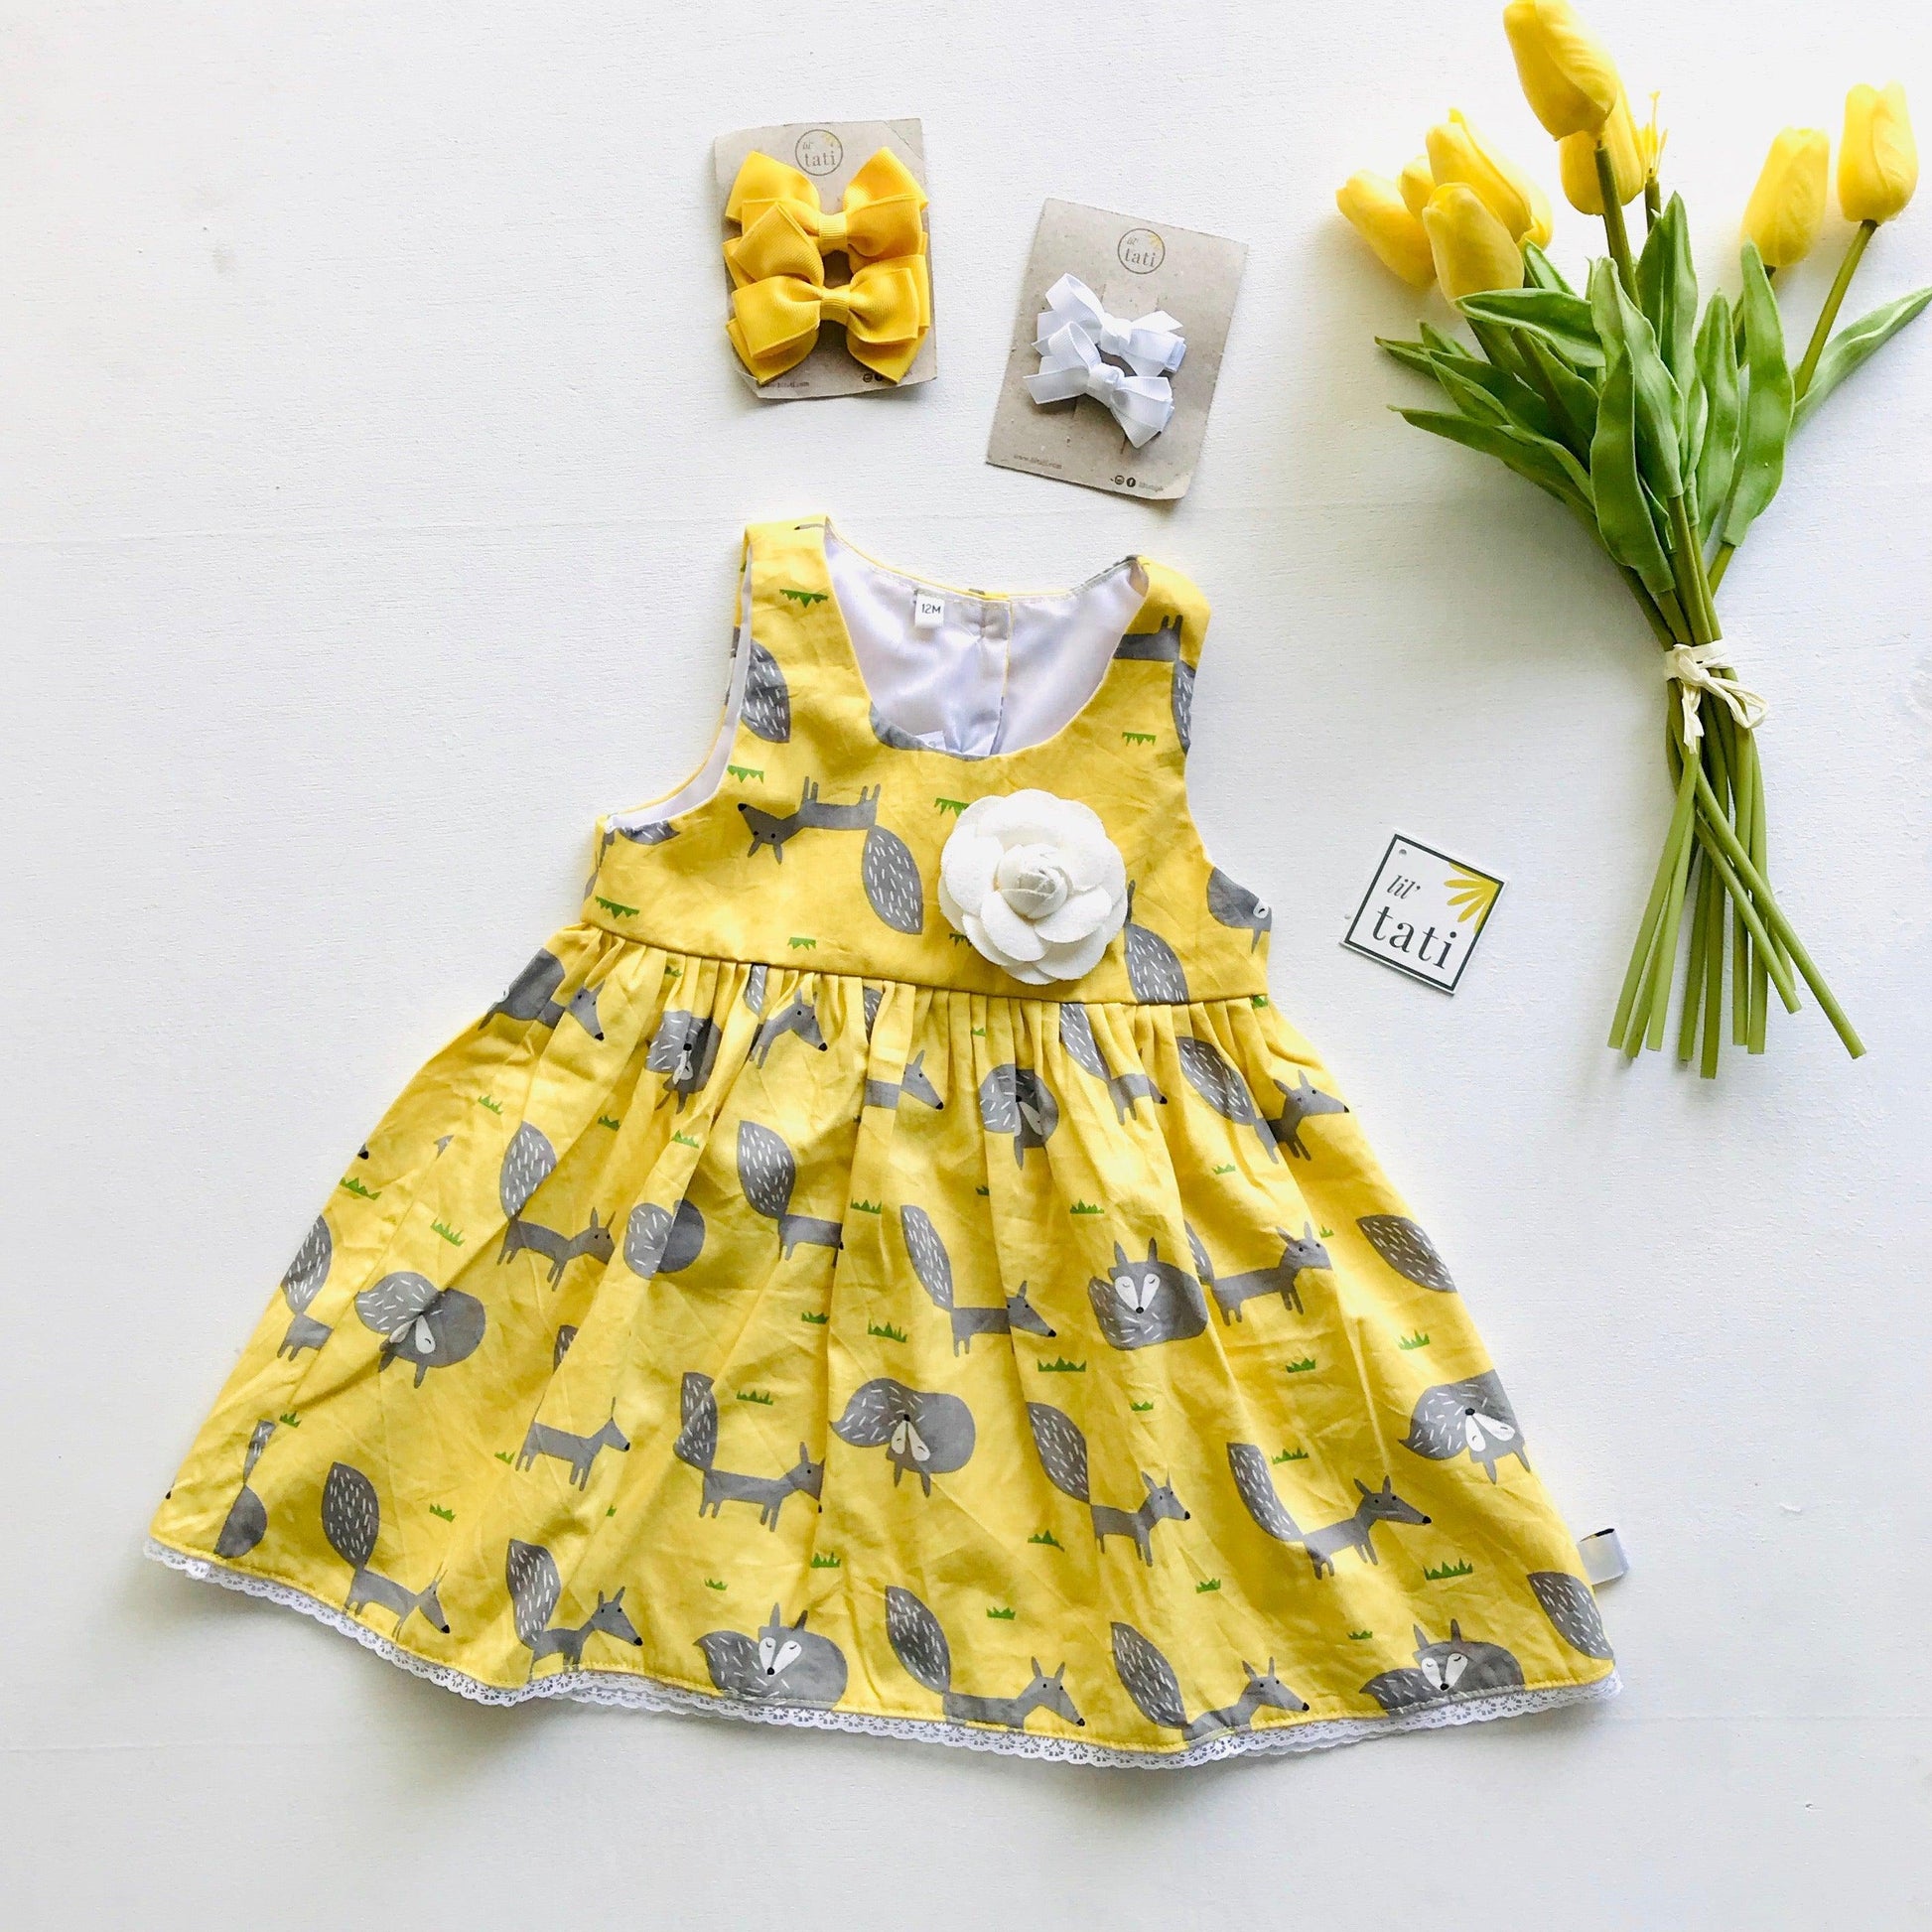 Iris Dress in Yellow Fox - Lil' Tati